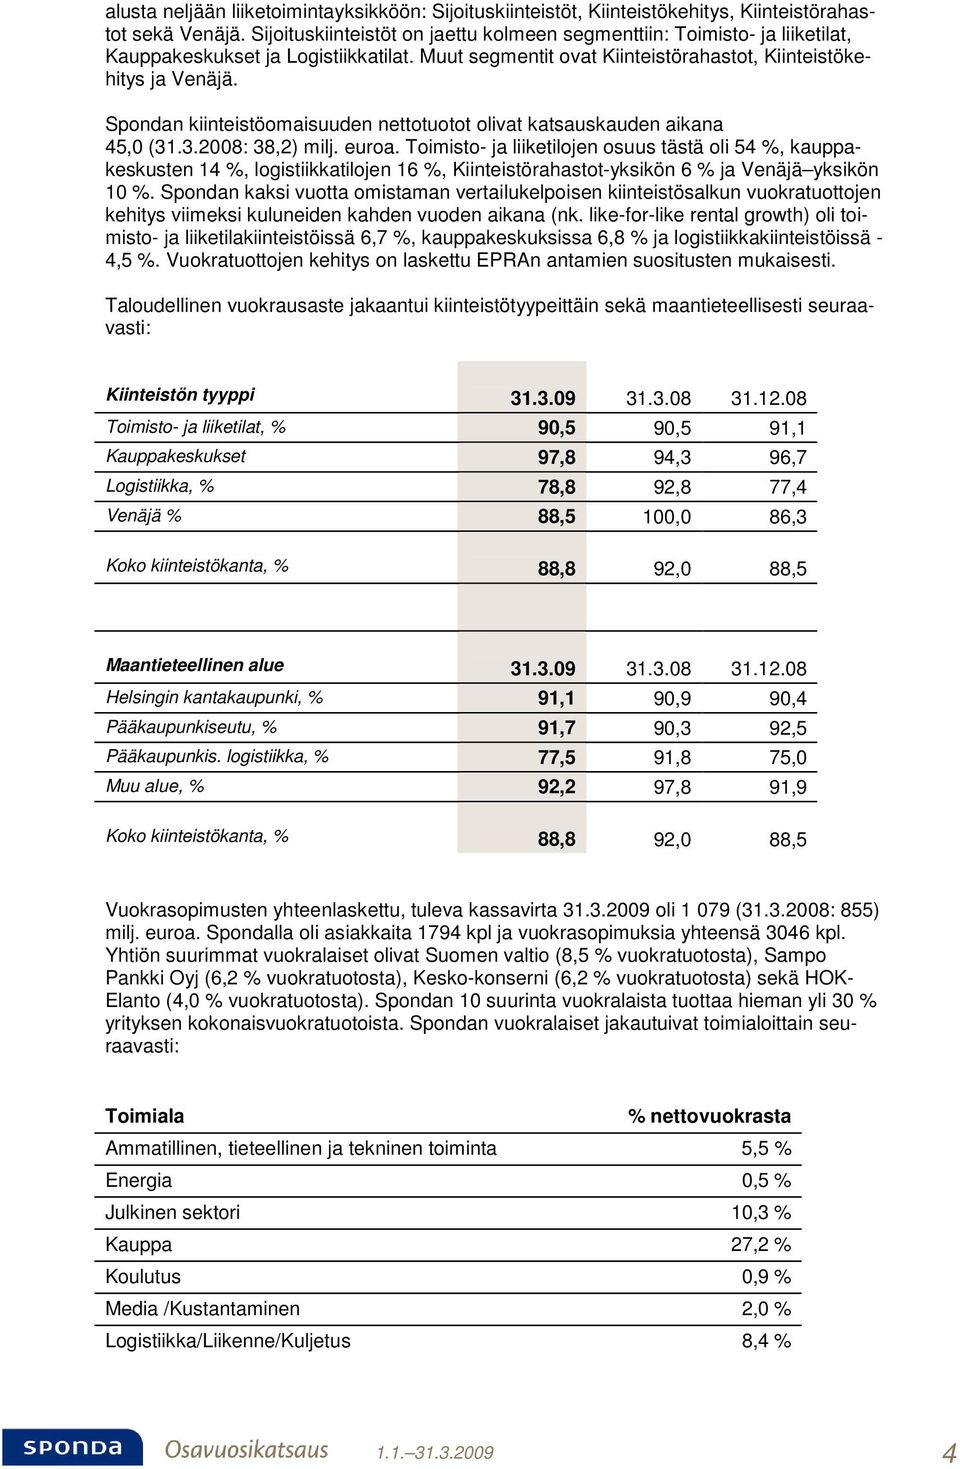 Spondan kiinteistöomaisuuden nettotuotot olivat katsauskauden aikana 45,0 (31.3.2008: 38,2) milj. euroa.